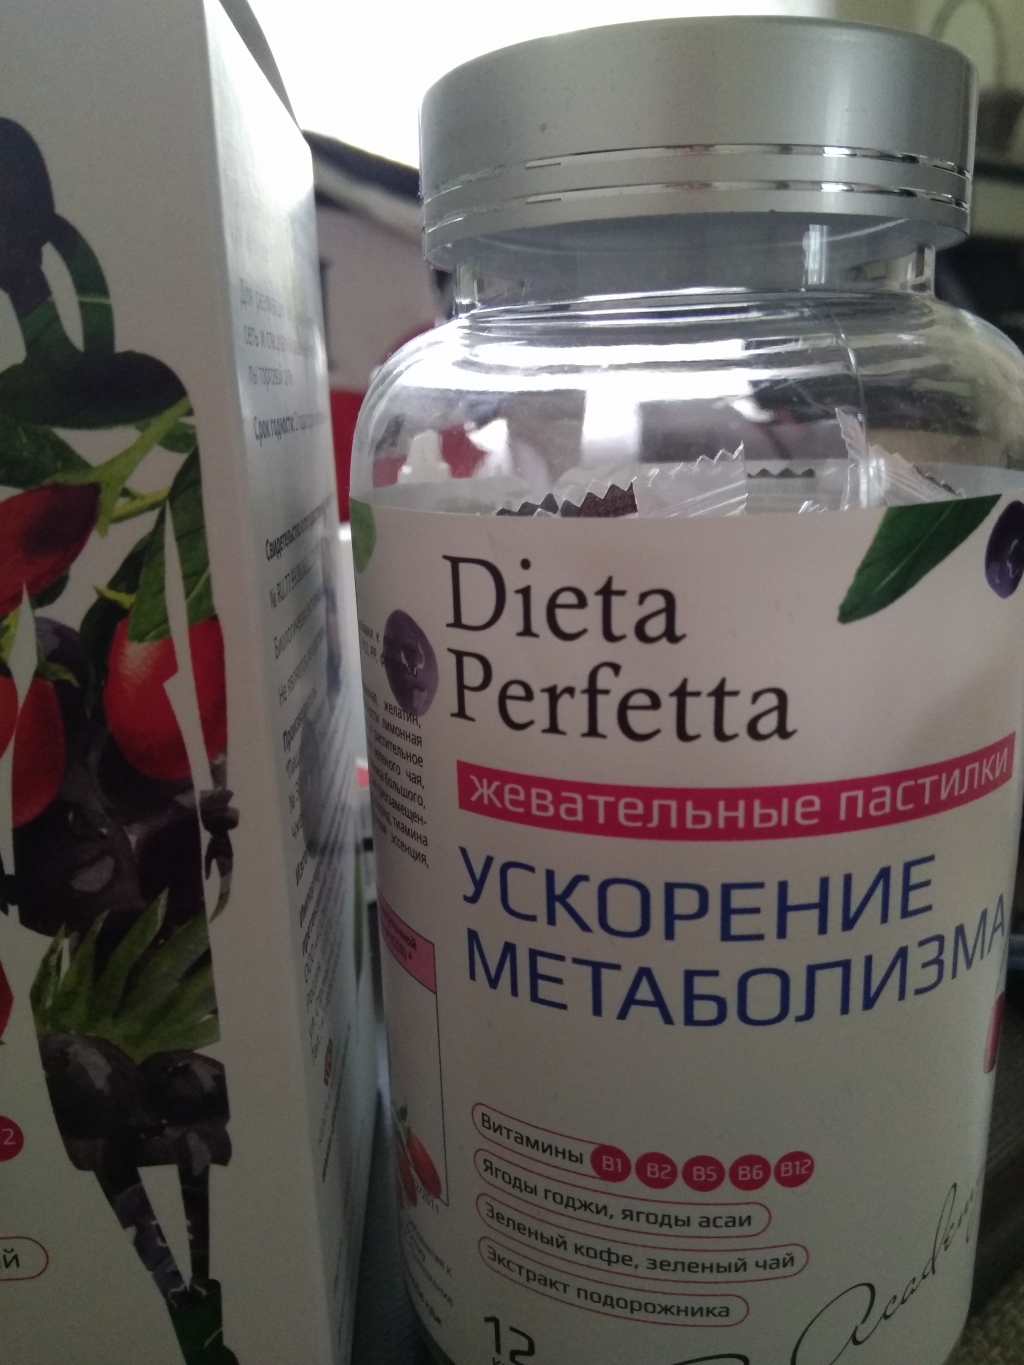 Диета Перфетта Ускорение метаболизма жевательные пастилки - Полезный десерт для здоровья и фигуры